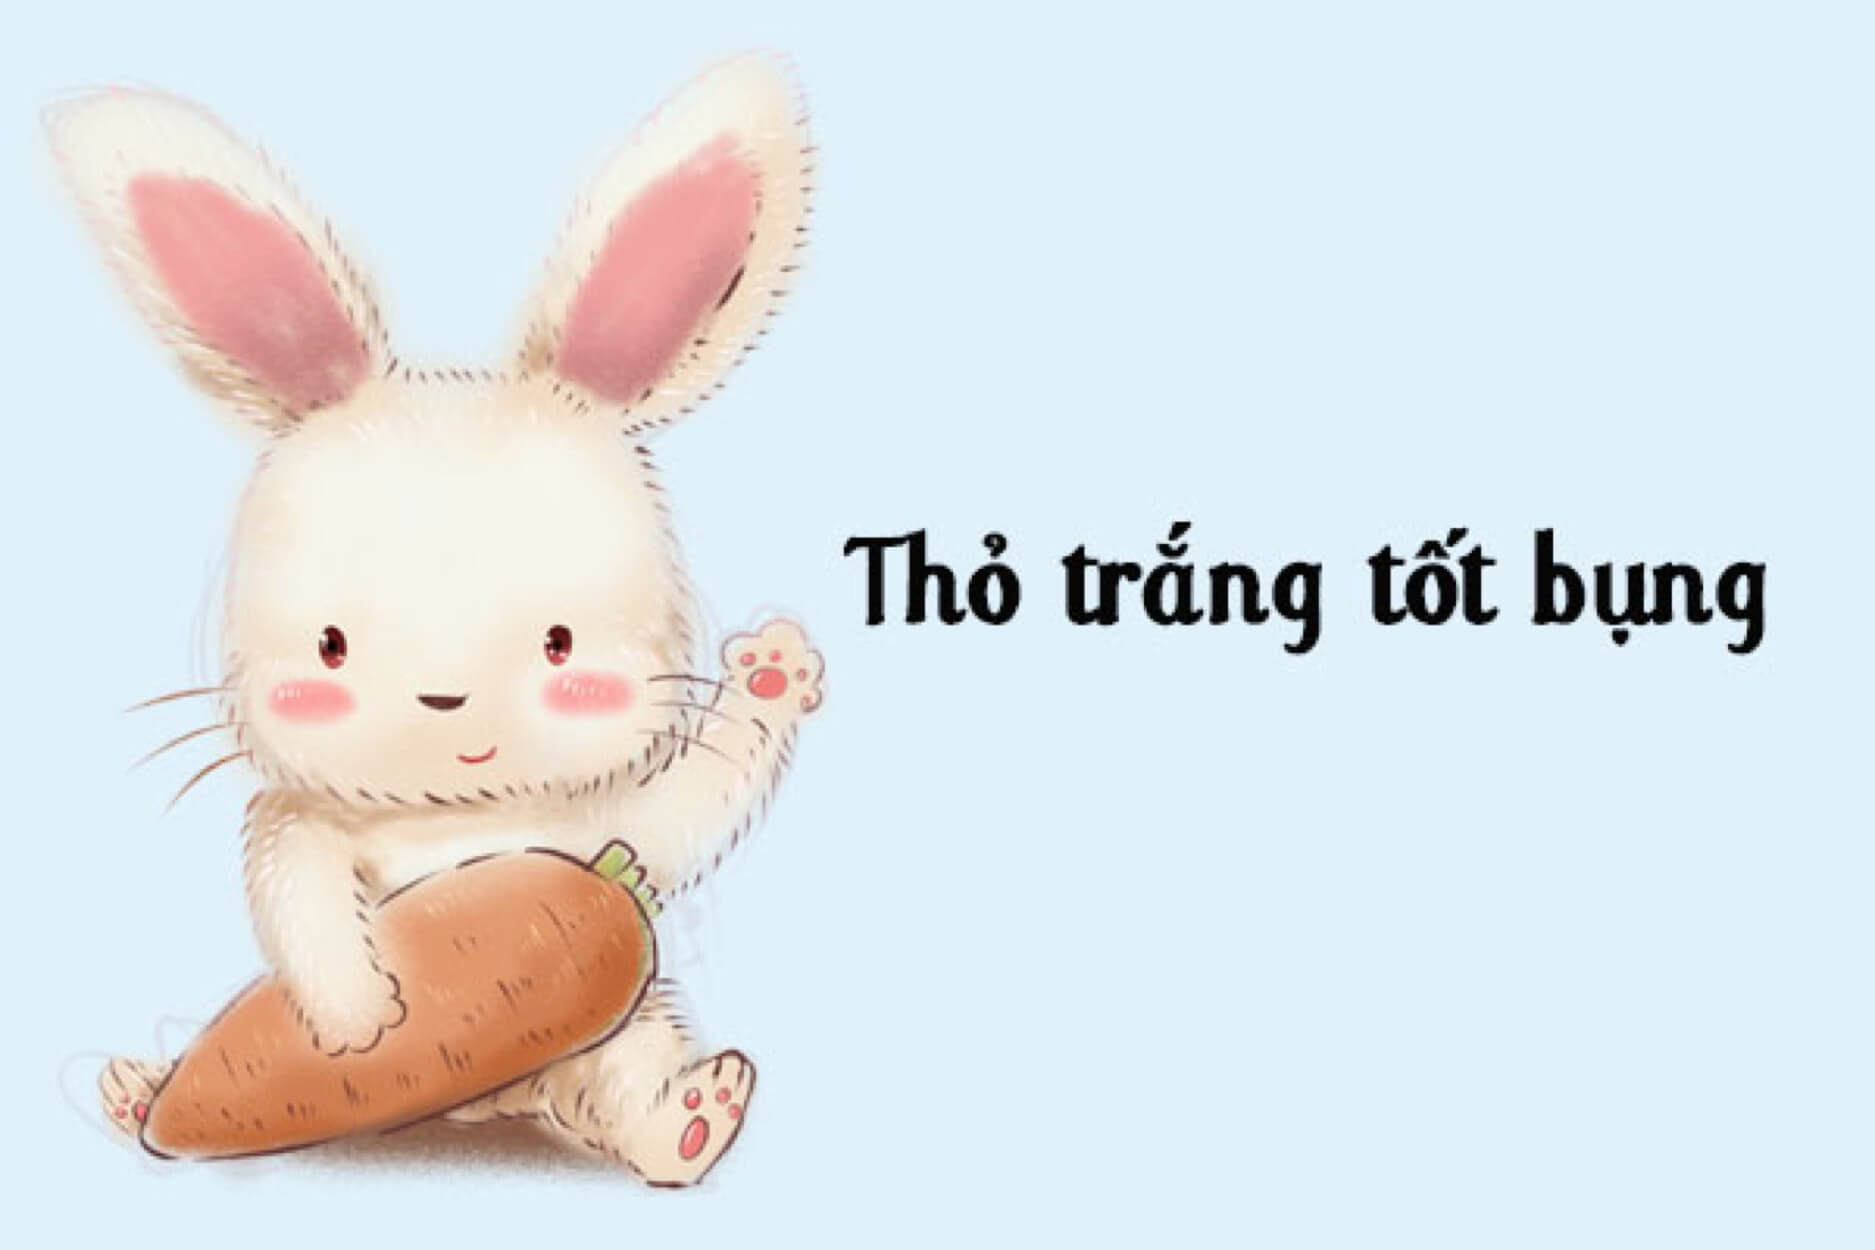 Truyện thai giáo tháng thứ 7: "Thỏ trắng tốt bụng"